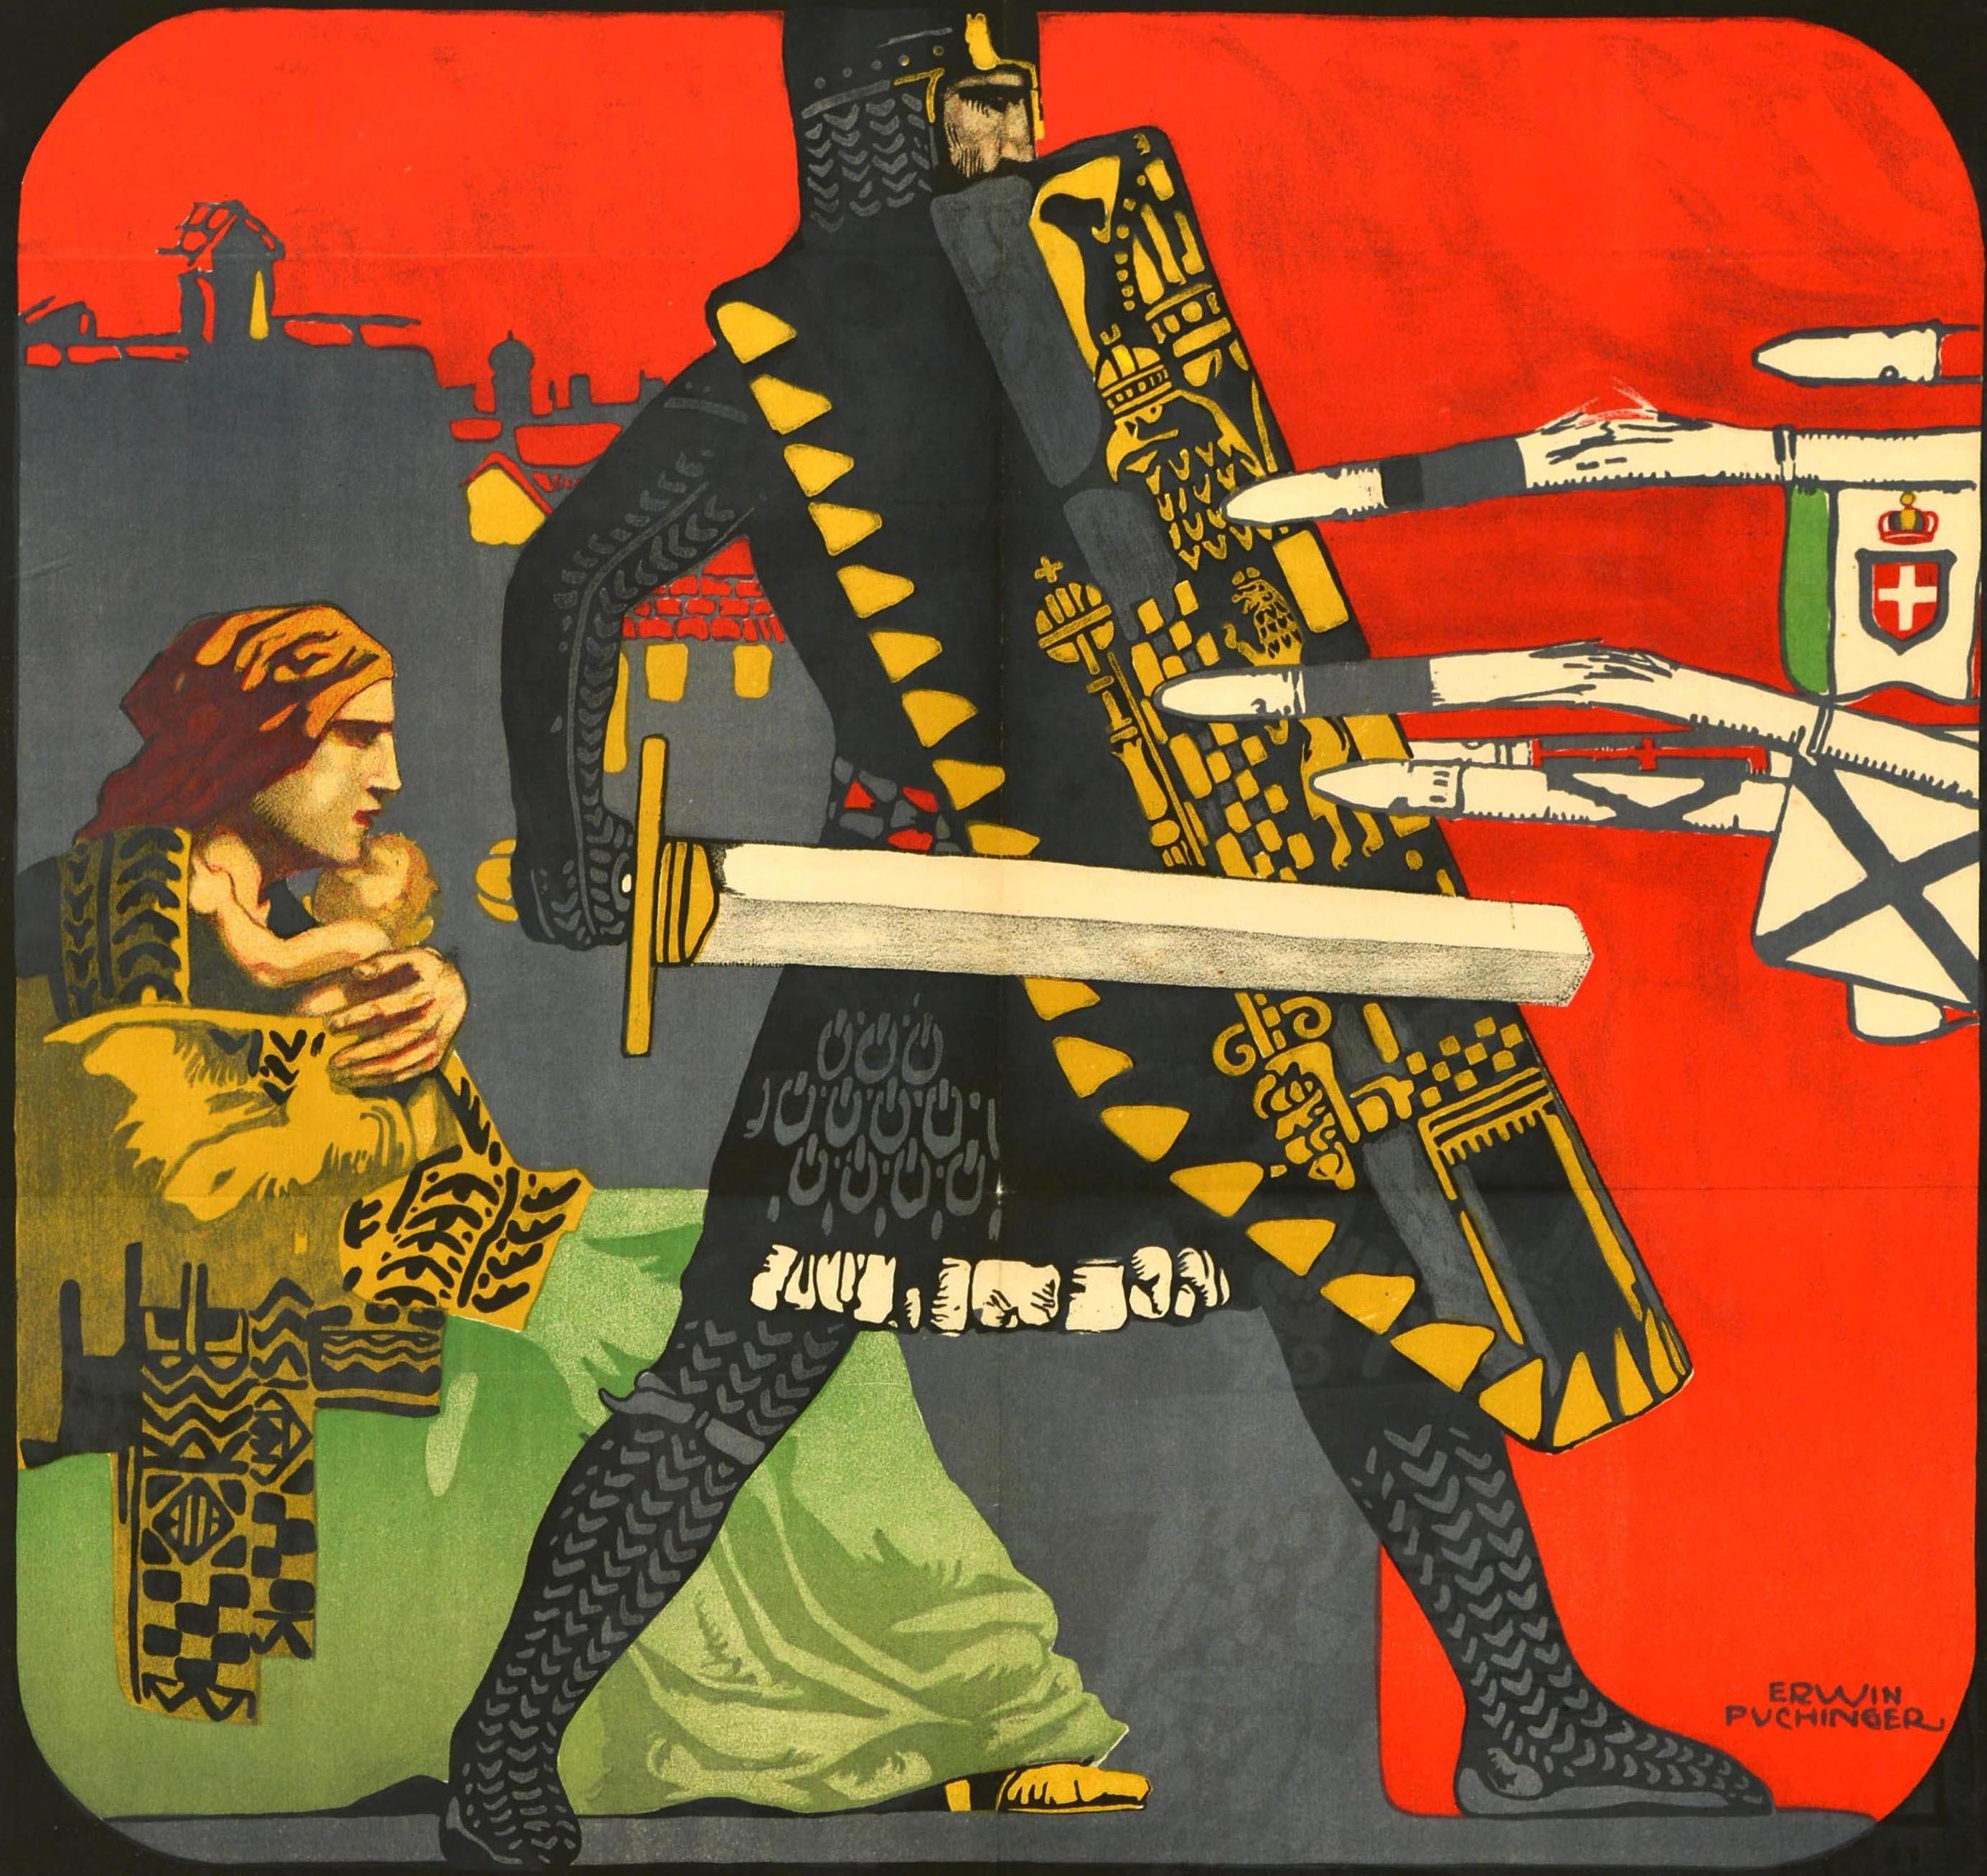 Affiche originale et ancienne d'obligations de guerre de la Première Guerre mondiale pour le 3e emprunt de guerre, comportant une illustration de l'artiste viennois Erwin Puchinger (1875-1944) représentant un soldat en armure militaire complète de